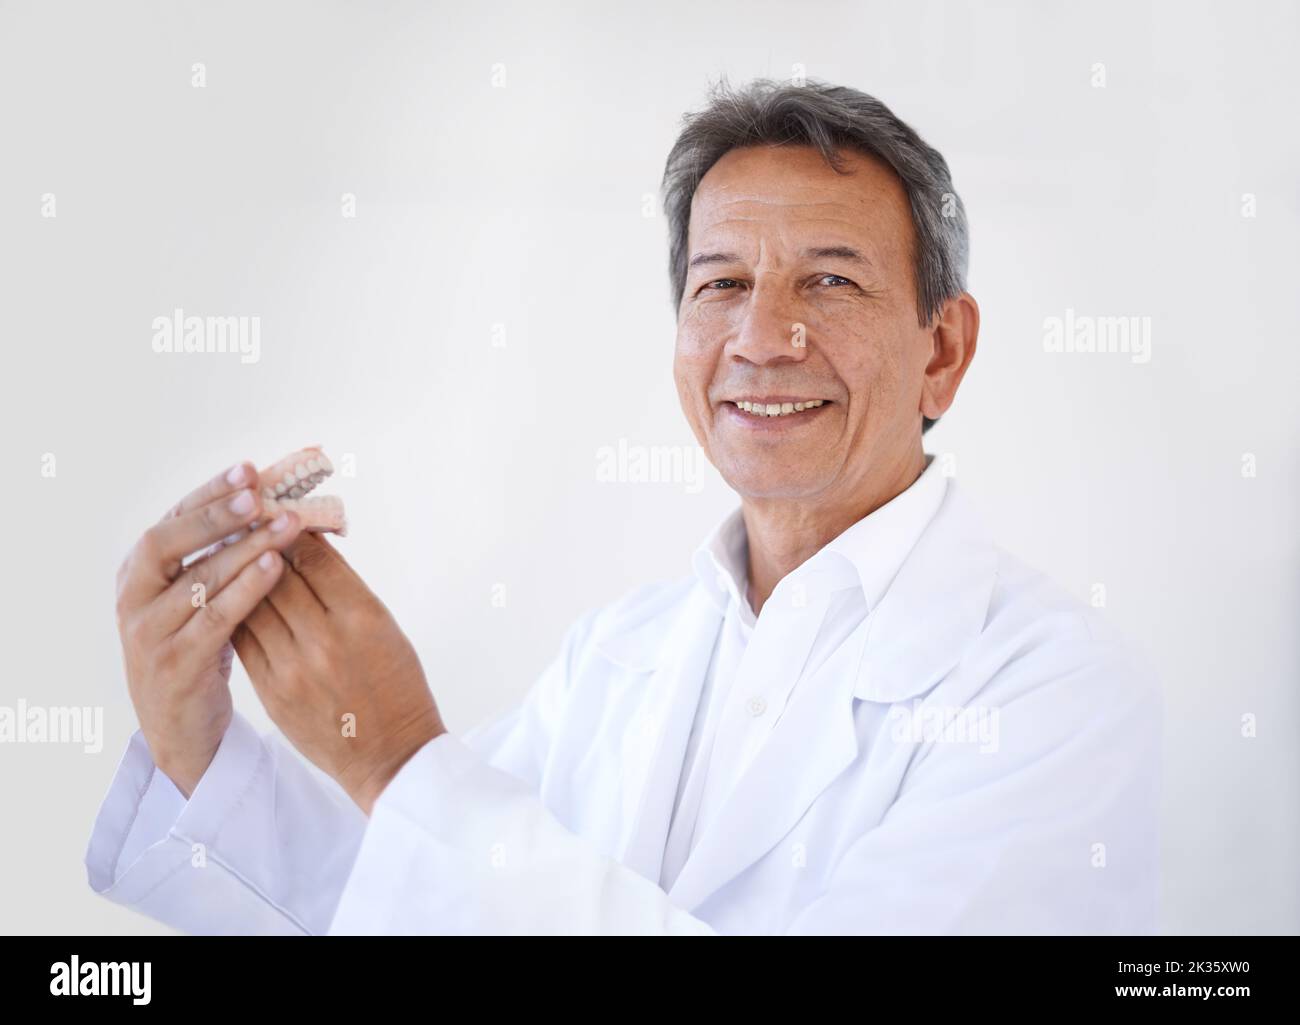 HES il miglior chirurgo in giro. Ritratto di un chirurgo dentale maschile maturo in piedi nel suo ufficio. Foto Stock